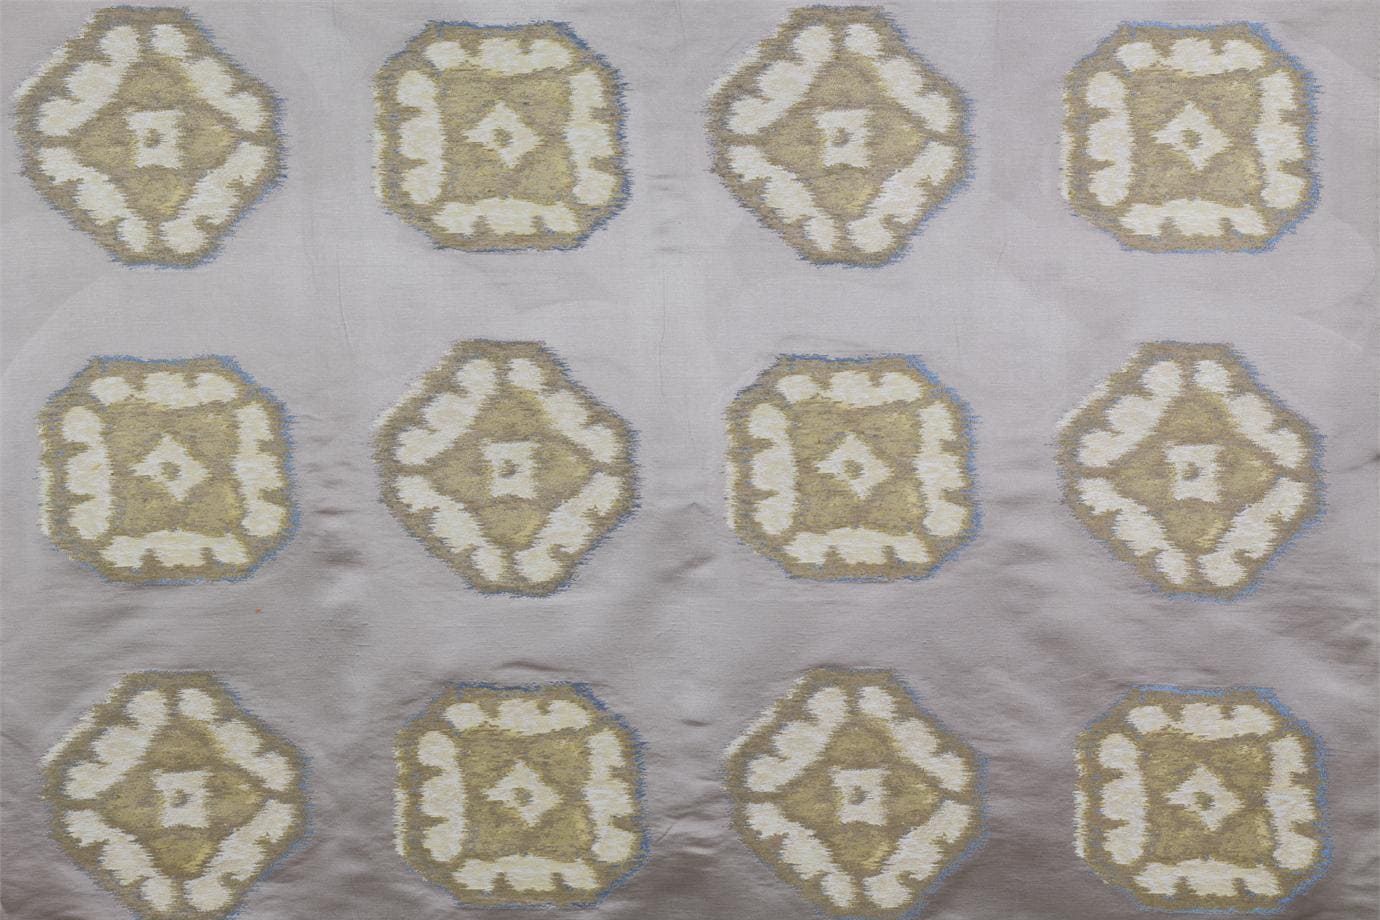 J1964 LE VALLETTE 002 Sabbia home decoration fabric